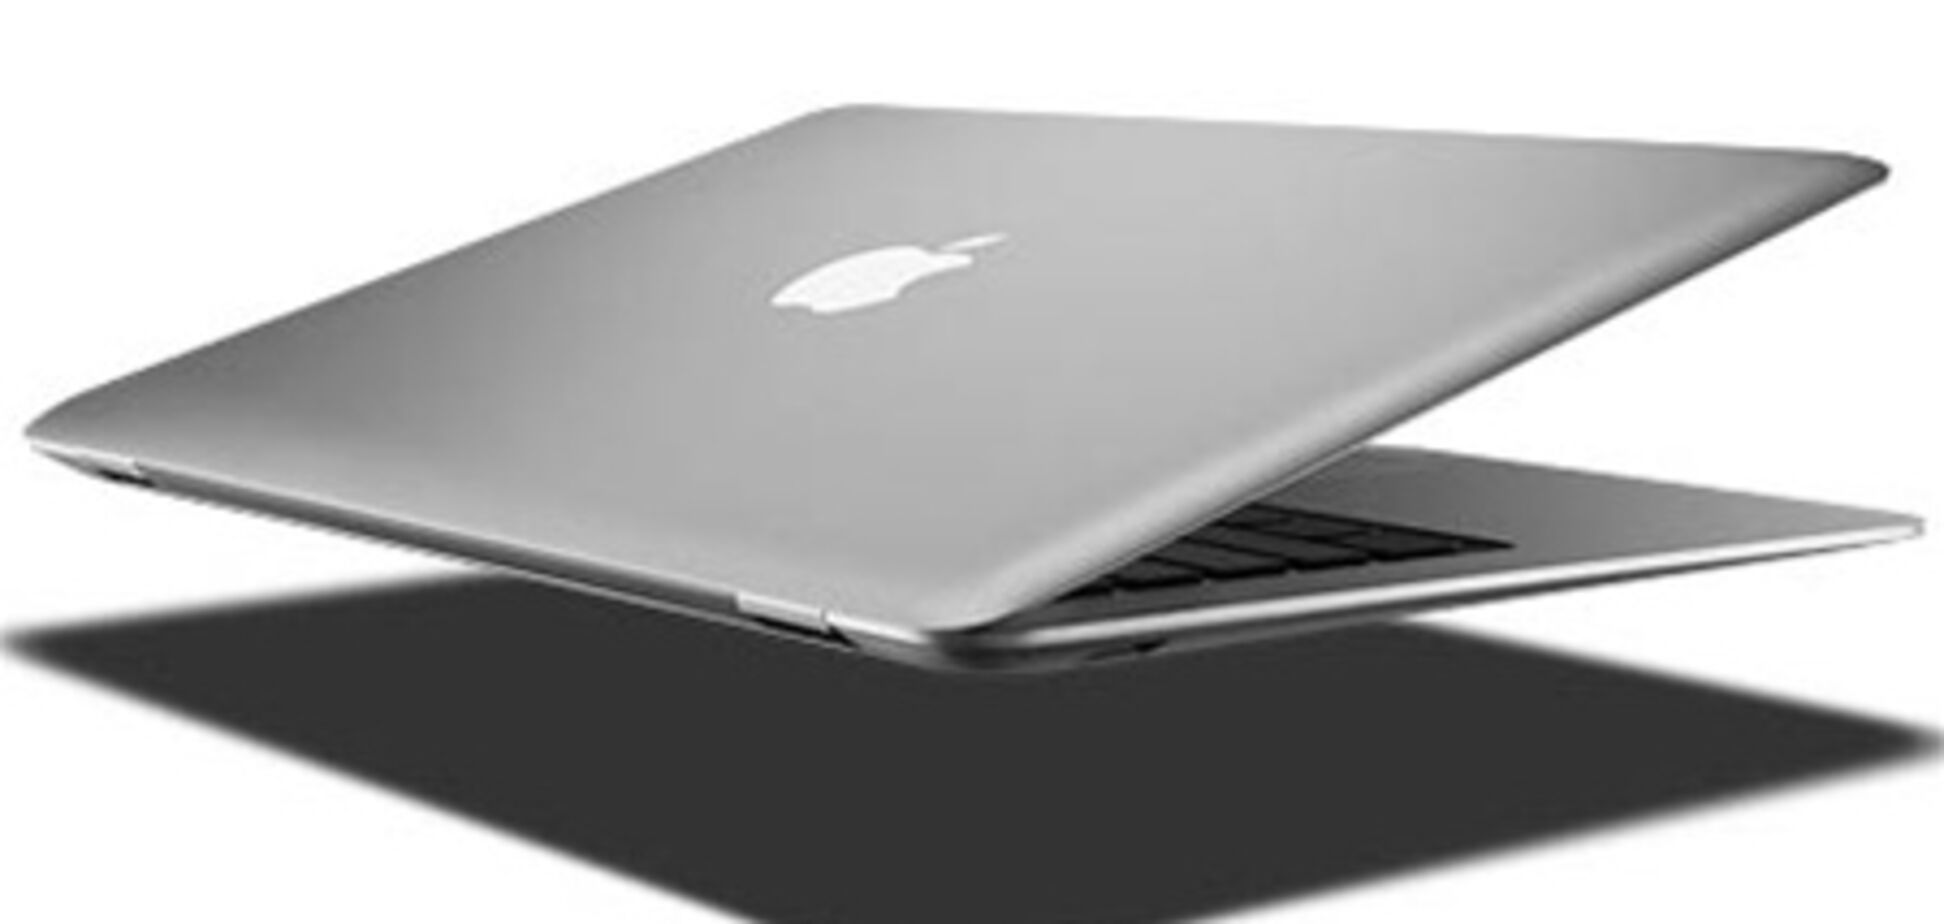 В MacBook могут вернуть подсветку клавиатуры